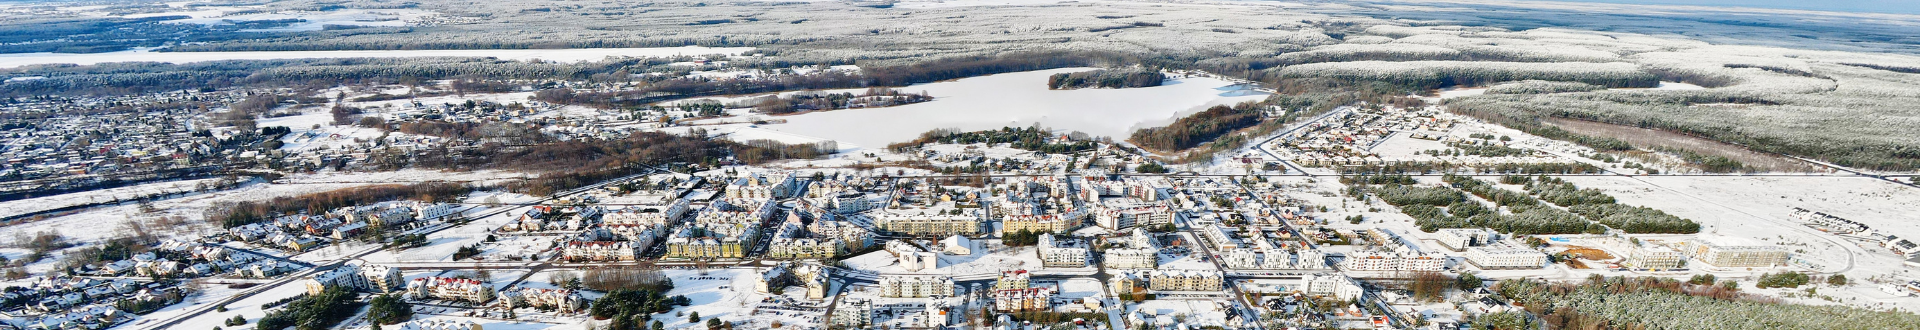 zdjęcie miasta w zimowej scenerii robione z dużej odległości (z lotu ptaka)